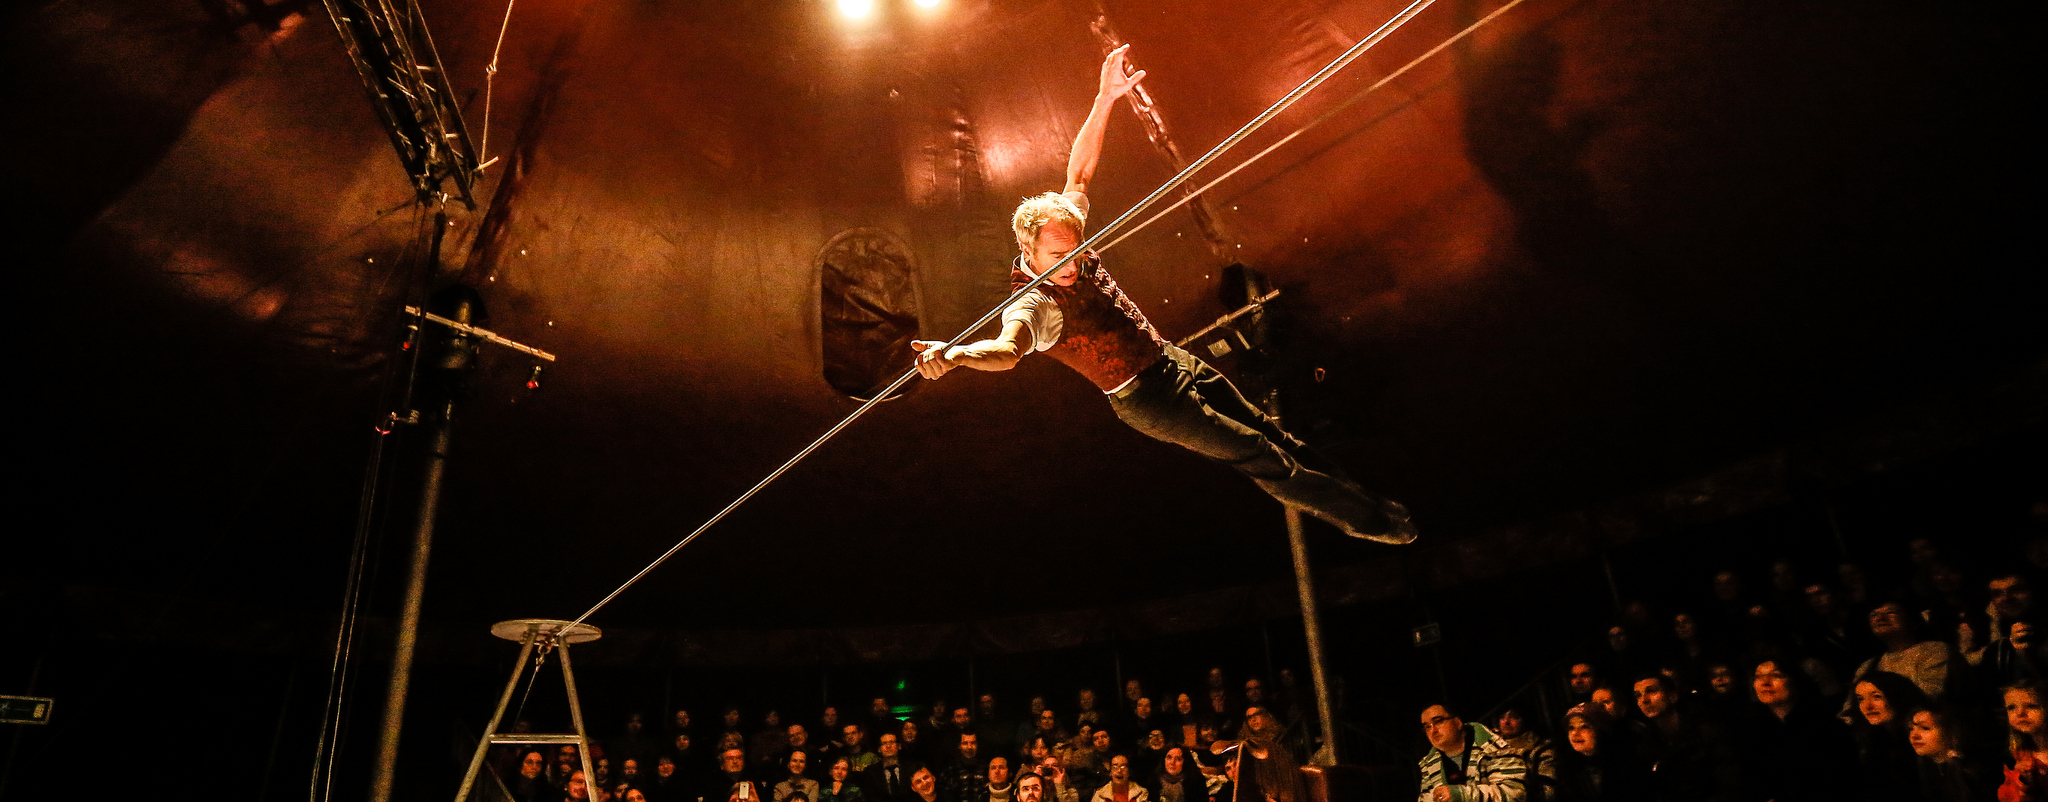 David Dimitri, homme cirque, montréal TOHU, blog le cahier, l'article, bloguer, cirque, acrobate, funambule, clown